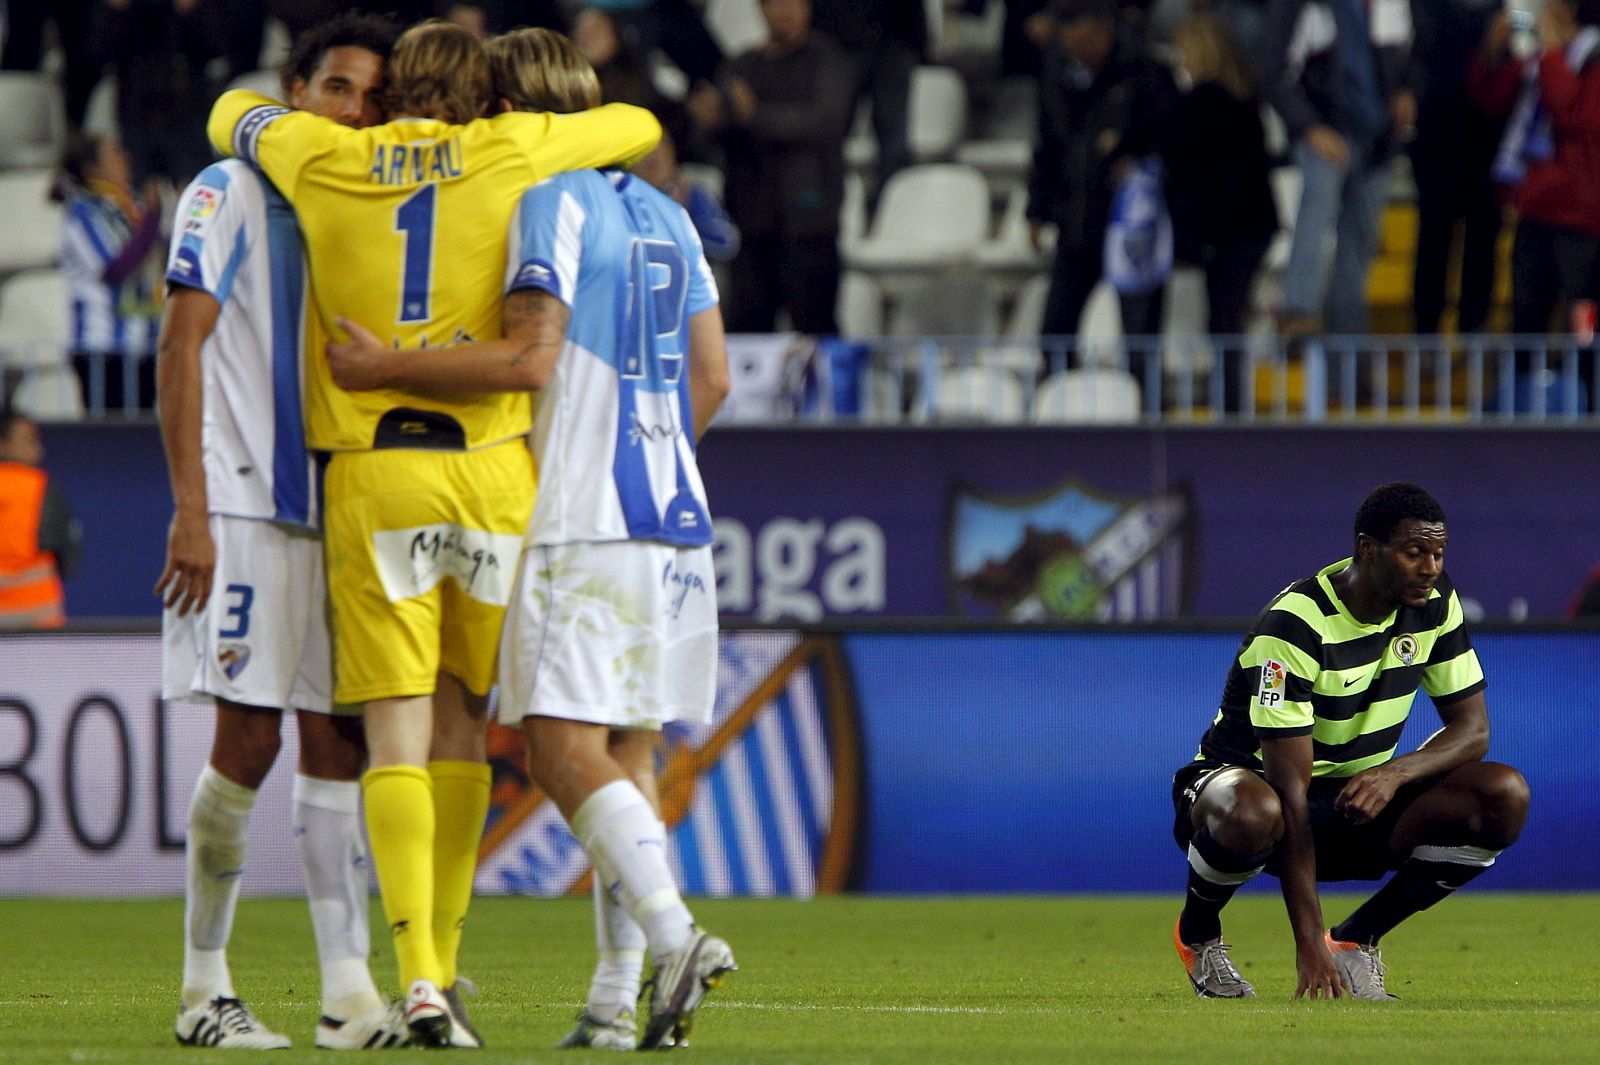 Los jugadores del Málaga, celebran su paso a la siguiente fase de la Copa del Rey, ante el jugador del Hércules C.F, Thomert.